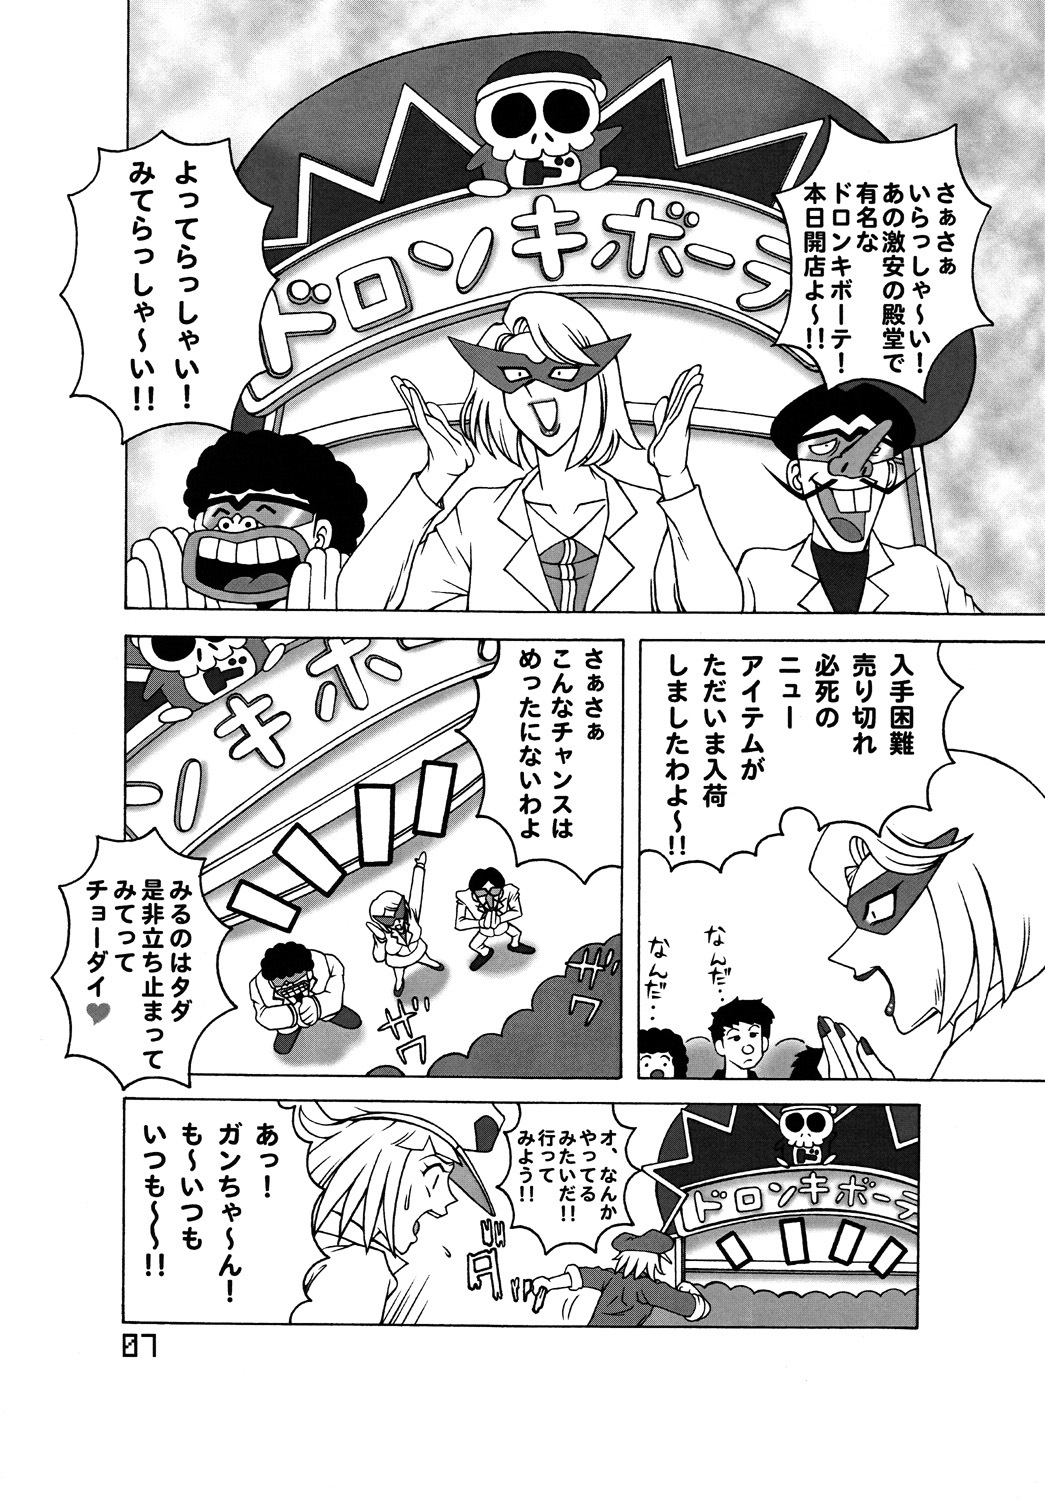 [DYNAMITE HONEY] Tatsunoko Dynamite page 6 full